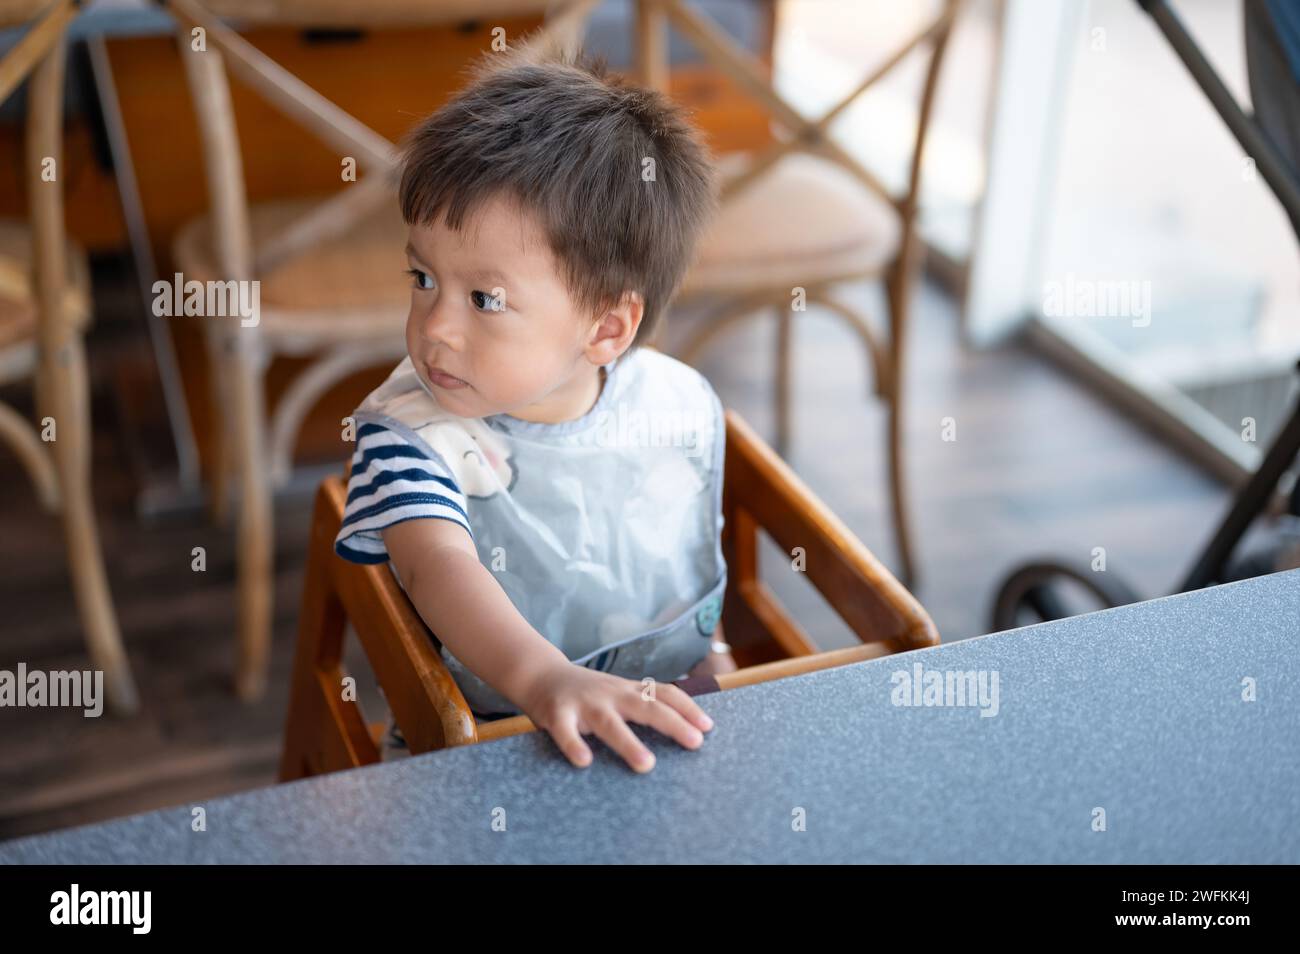 Porträt eines hungrigen Jungen in einem gestreiften T-Shirt, der in einem Restaurant in einem hohen Sessel sitzt und geduldig auf sein Mittagessen wartet Stockfoto